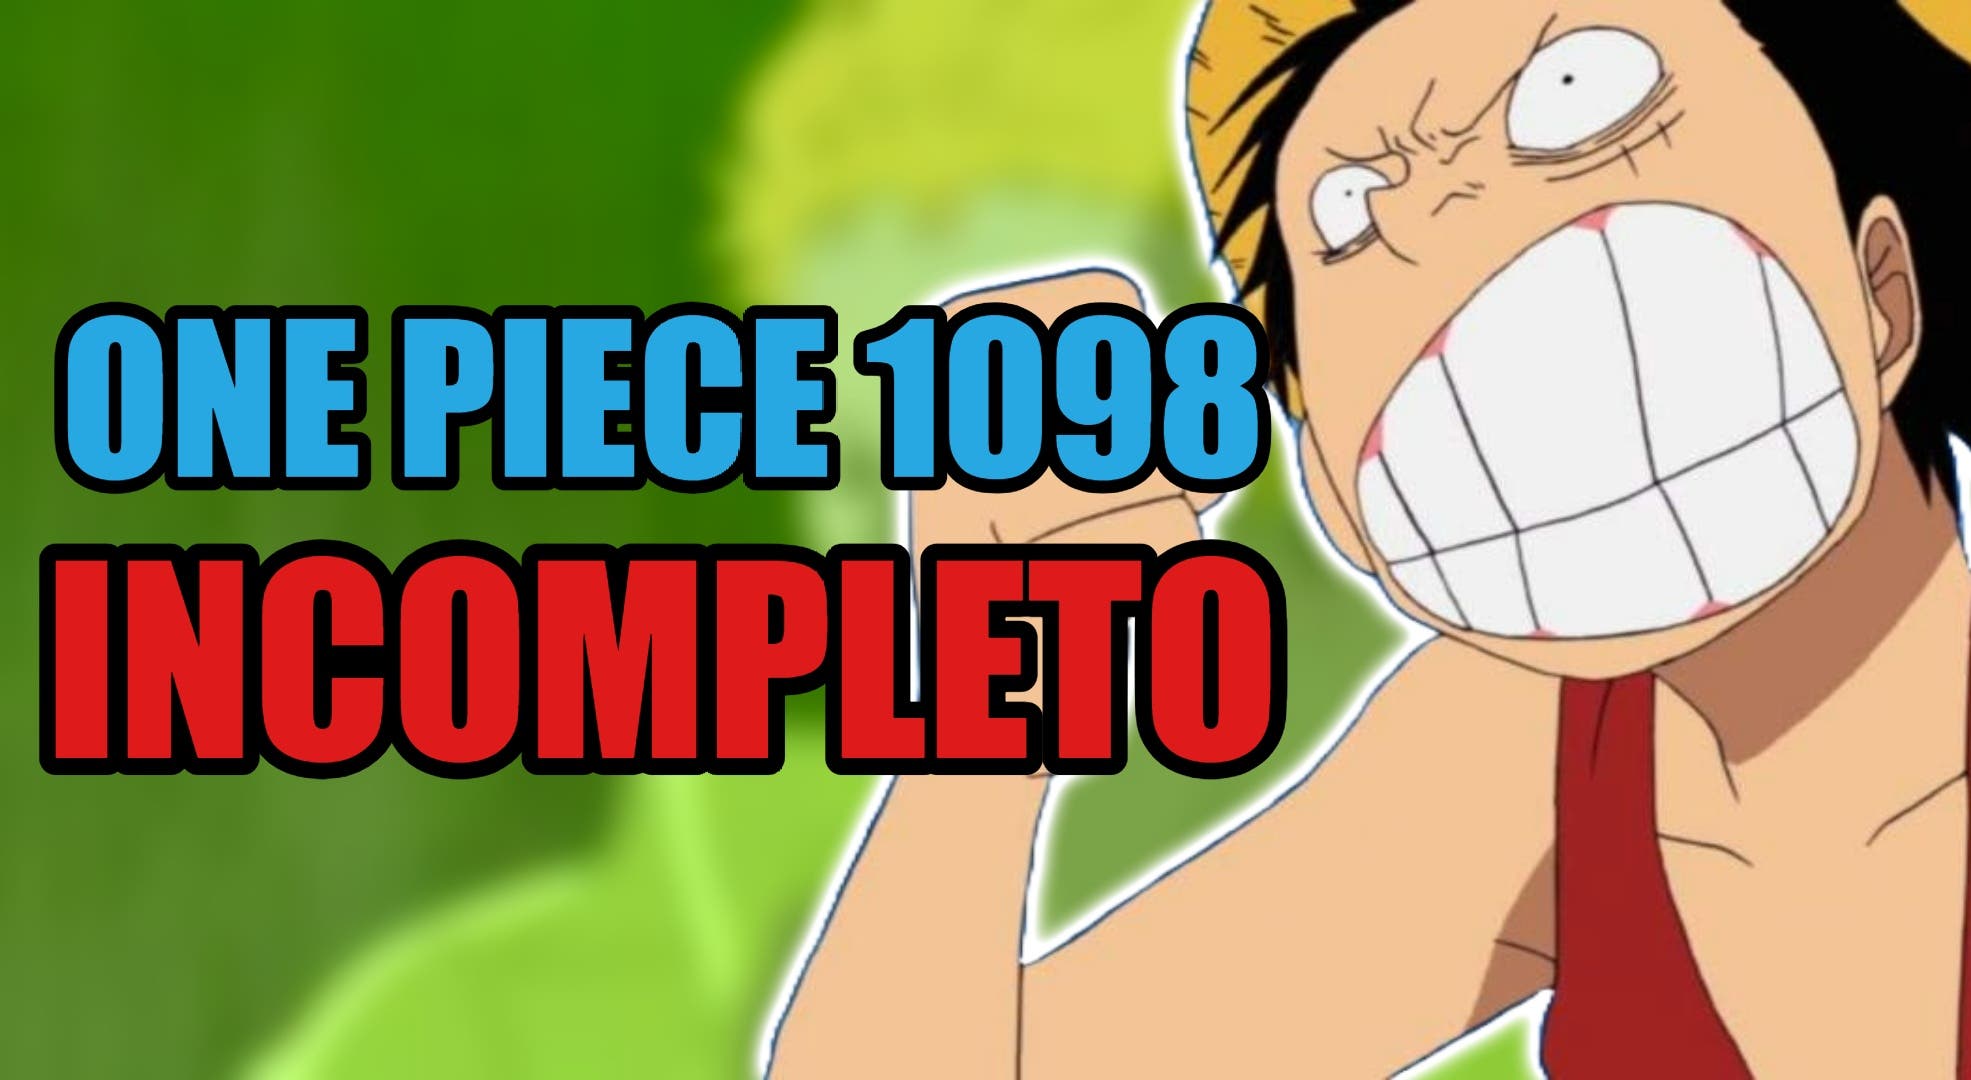 One Piece Capítulo 1098 Data de Lançamento, Spoilers